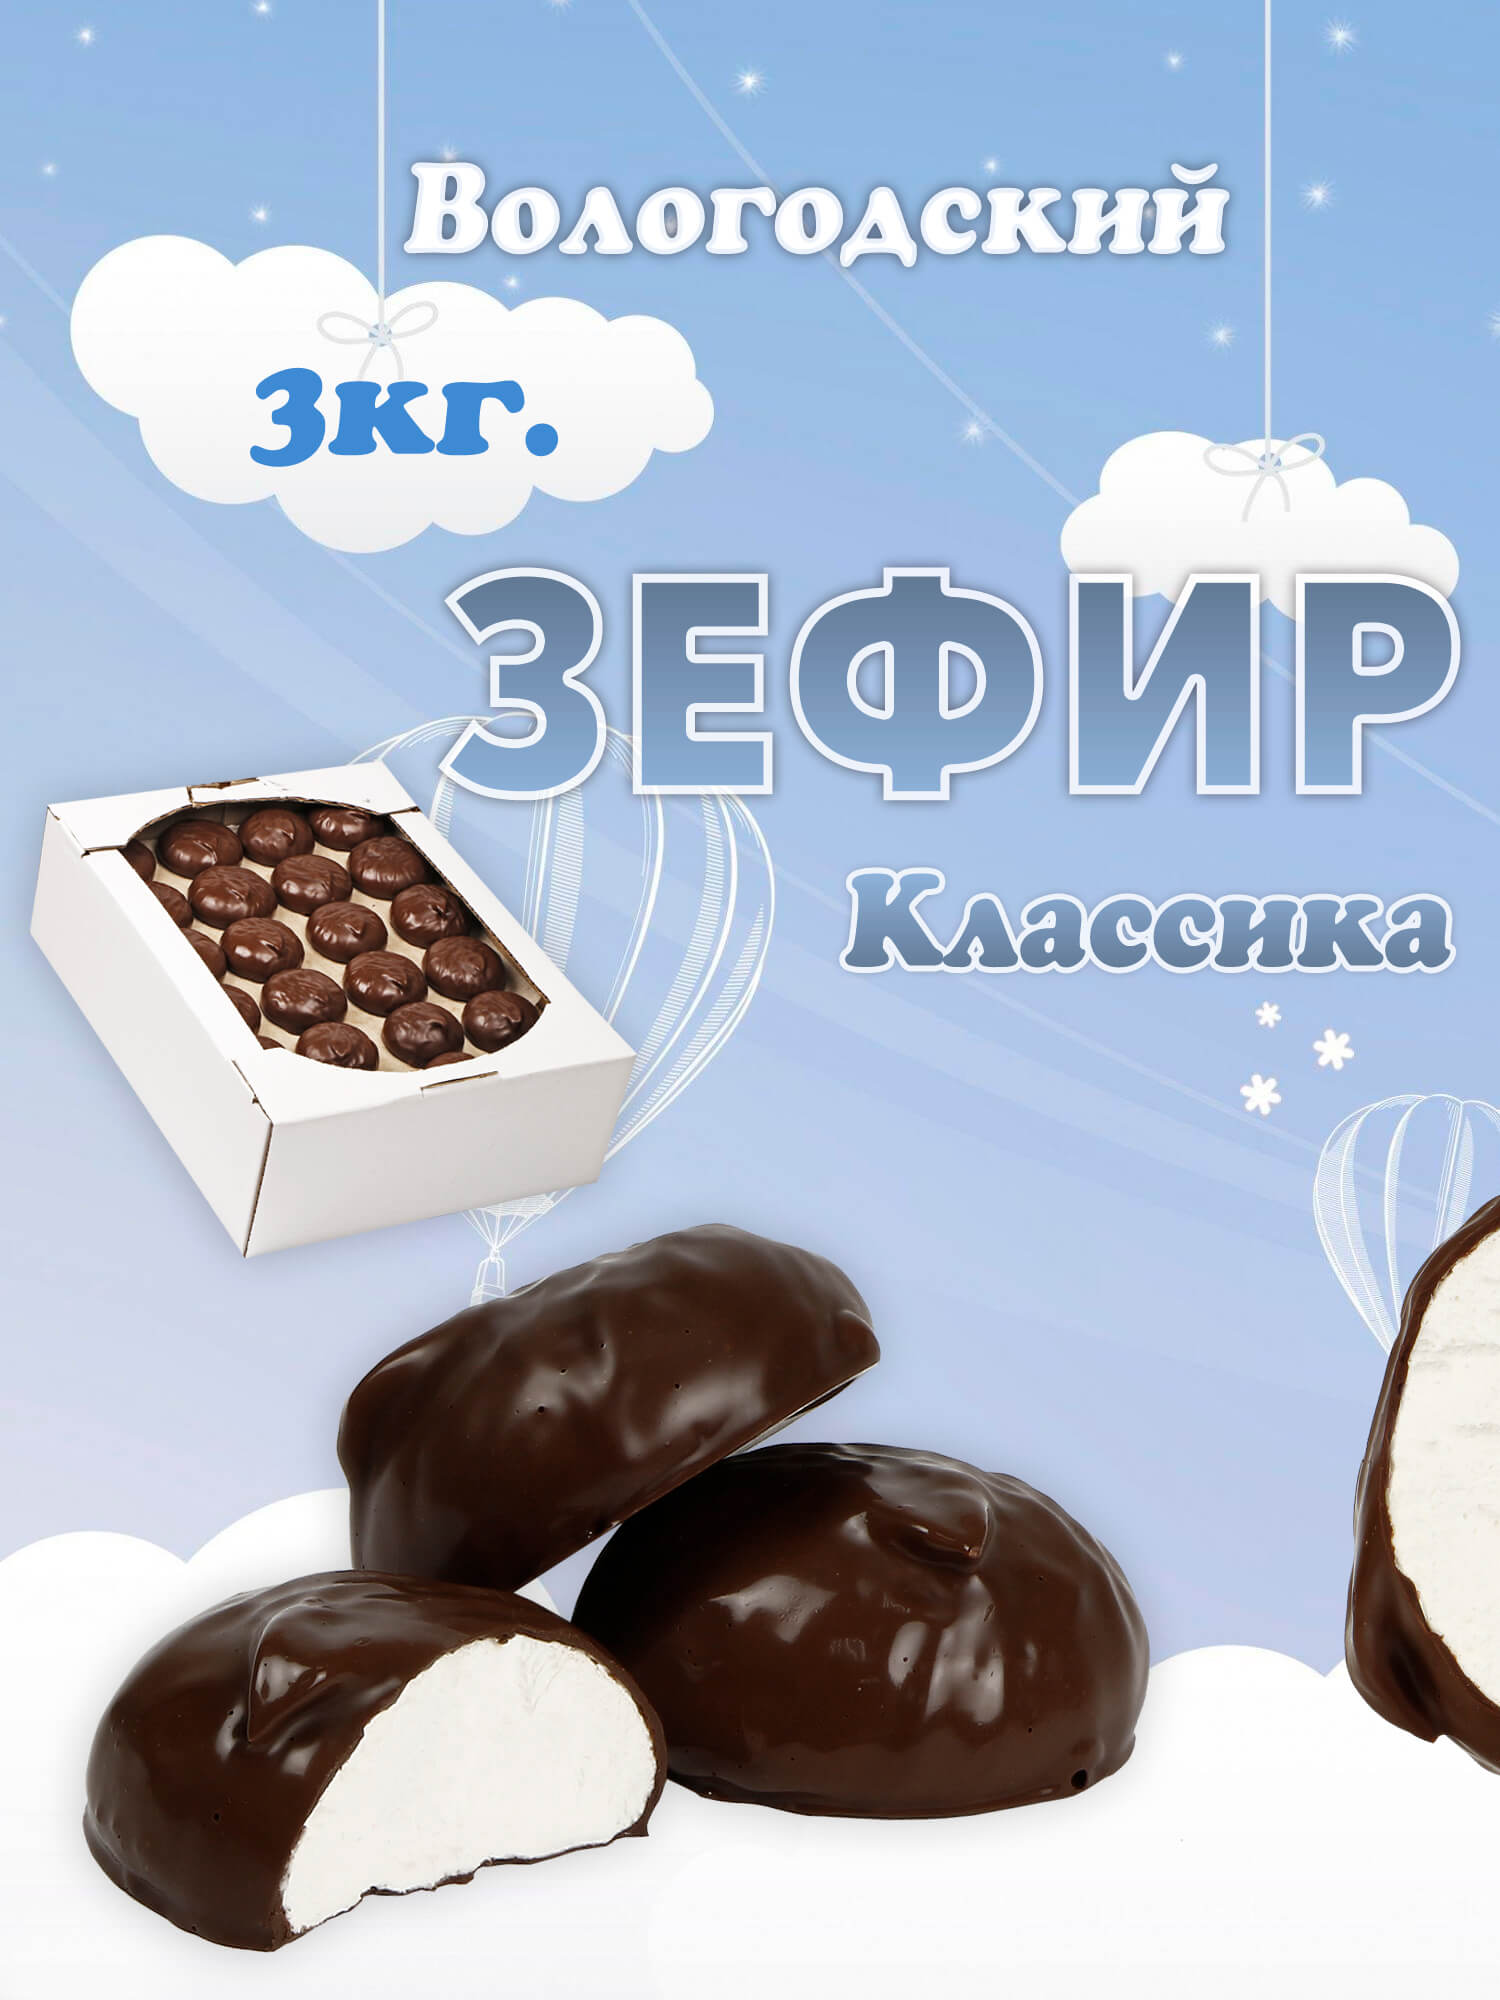 Зефир Вологодский в шоколаде с Классика 3кг.  .jpg